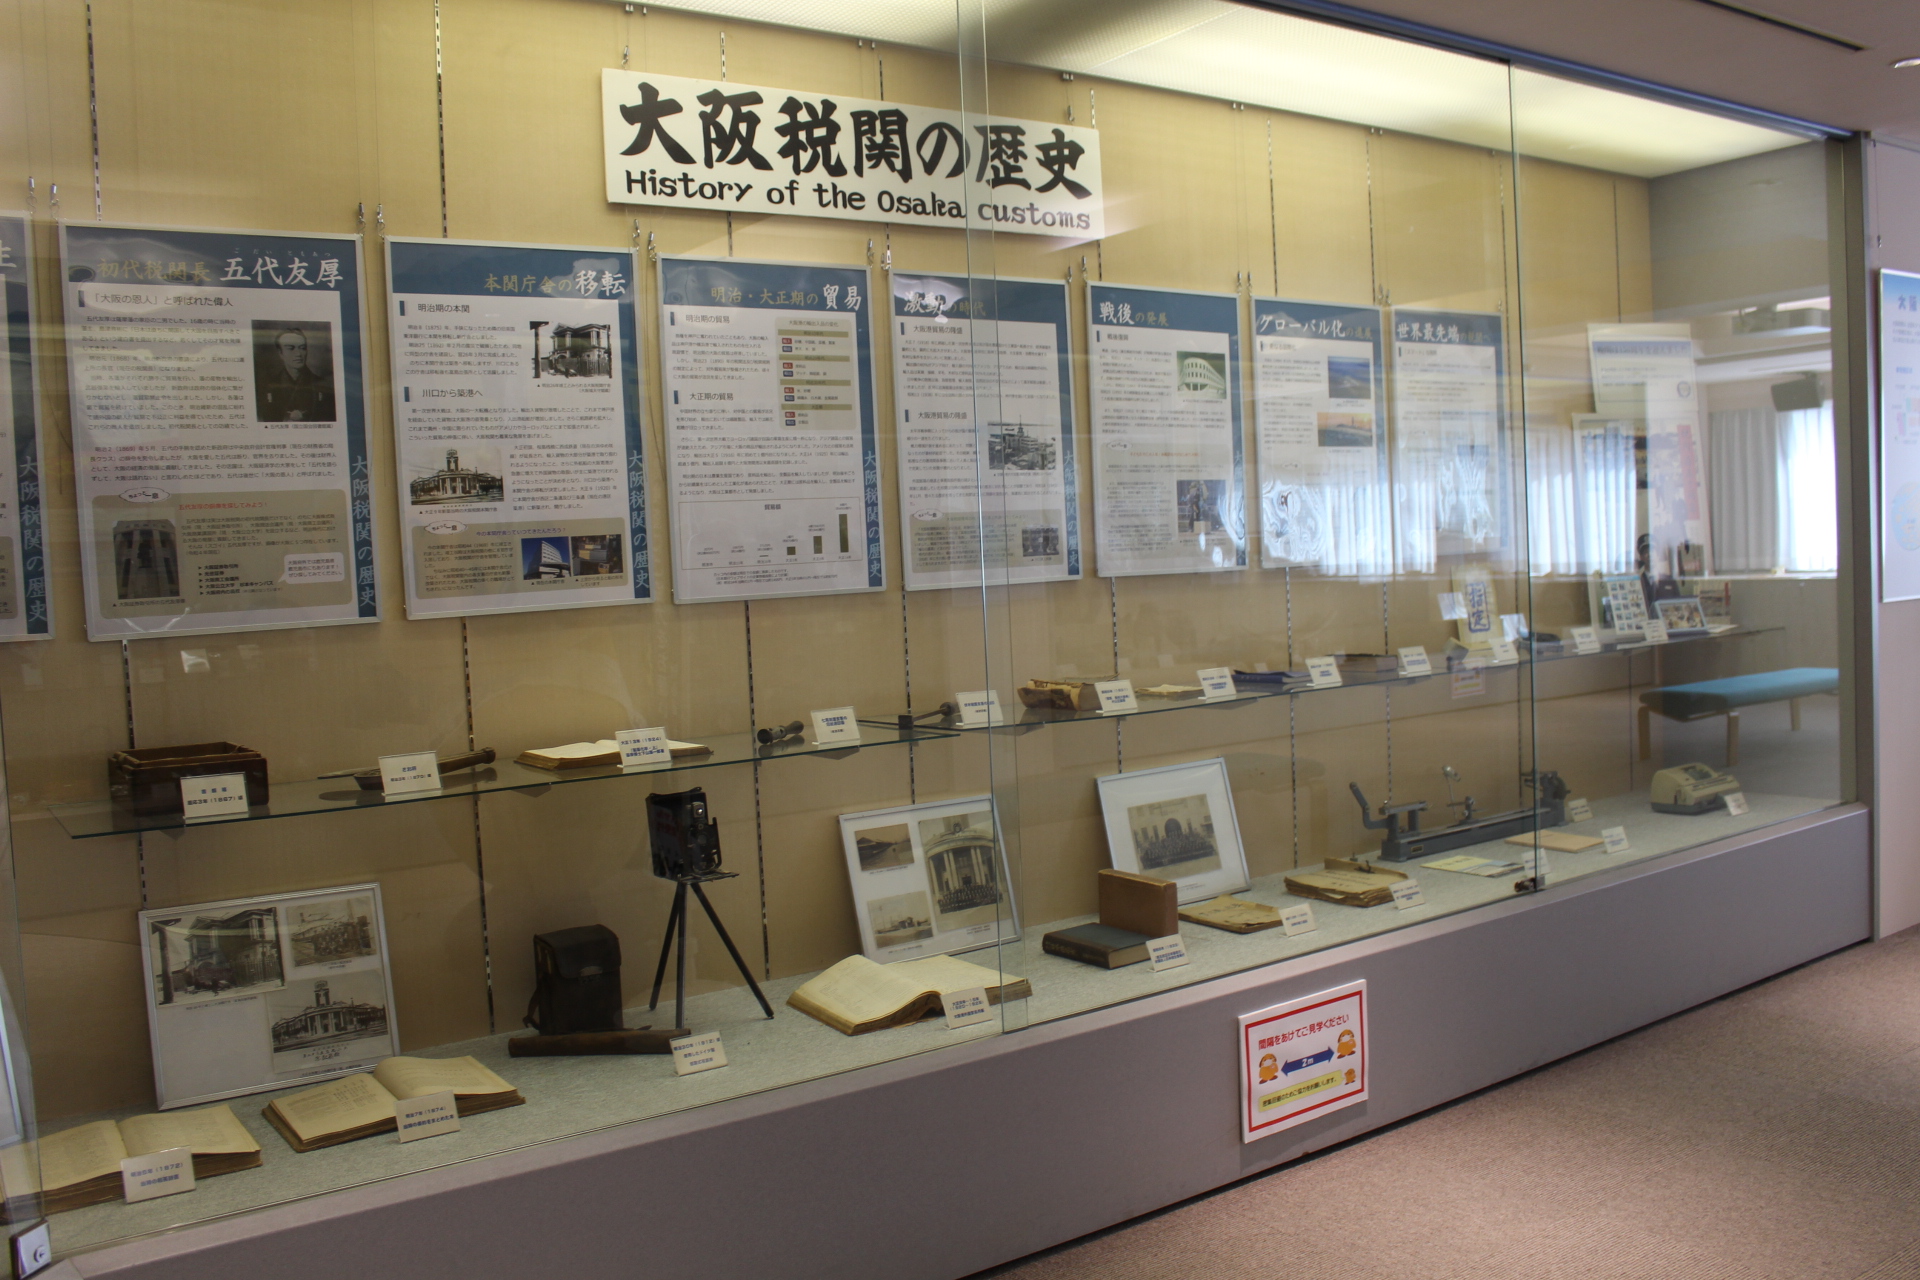 大阪税関の歴史に関する展示